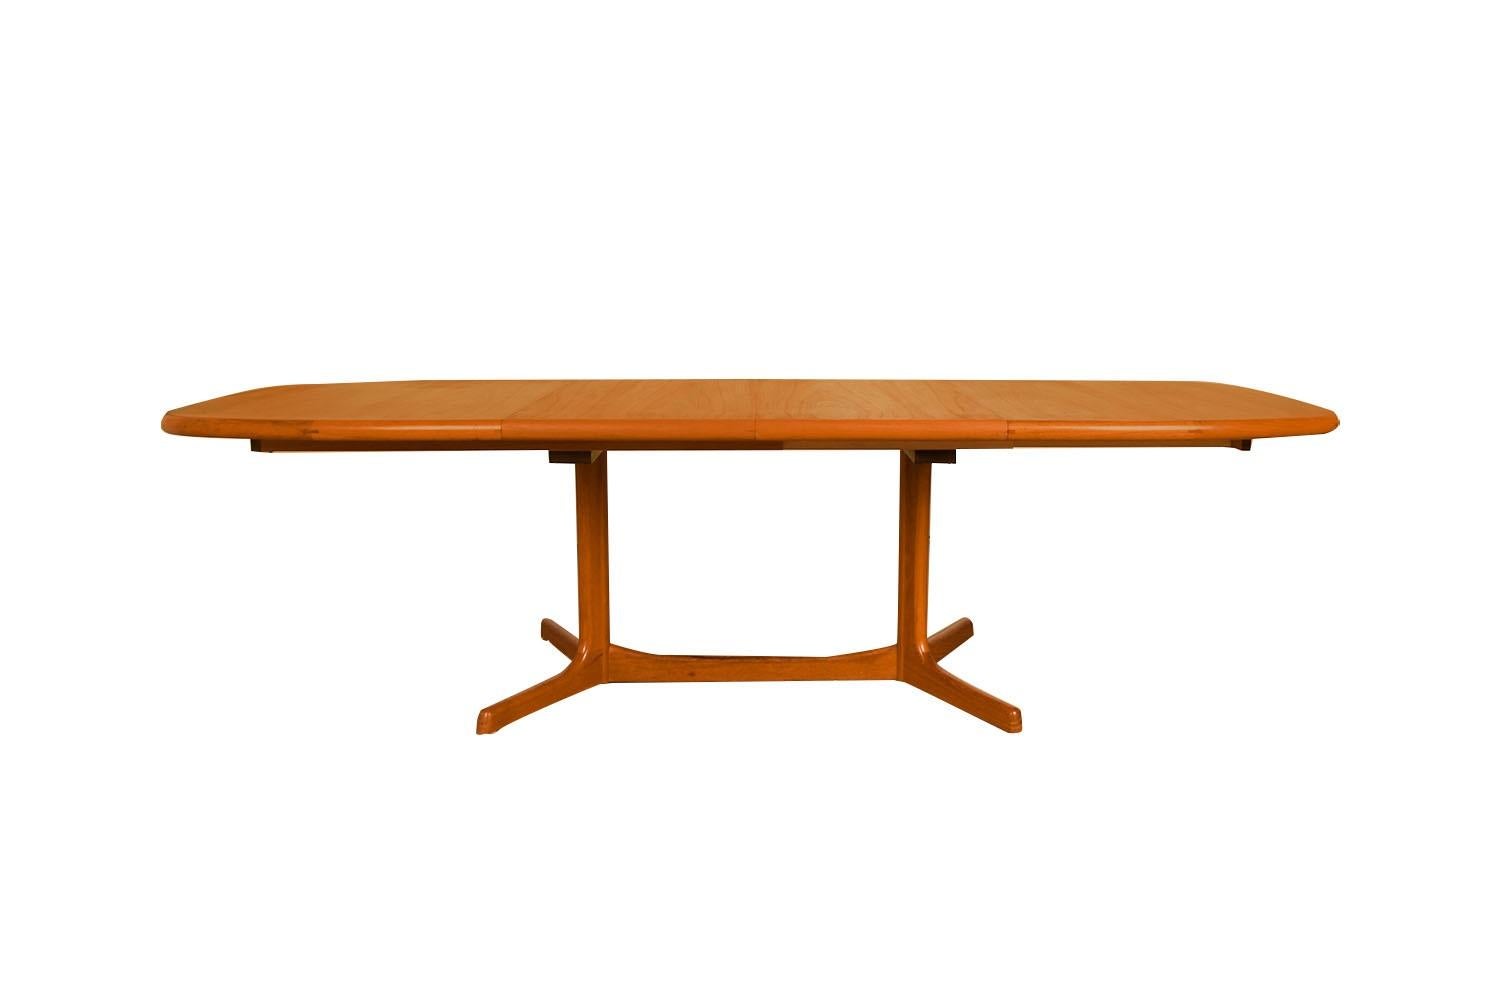 Magnifique table de salle à manger extensible de style moderne du milieu du siècle, circa 1970, par Dyrlund. Elle se caractérise par un teck au grain riche et brillant et par des lignes douces et épurées, caractéristiques du design danois classique.